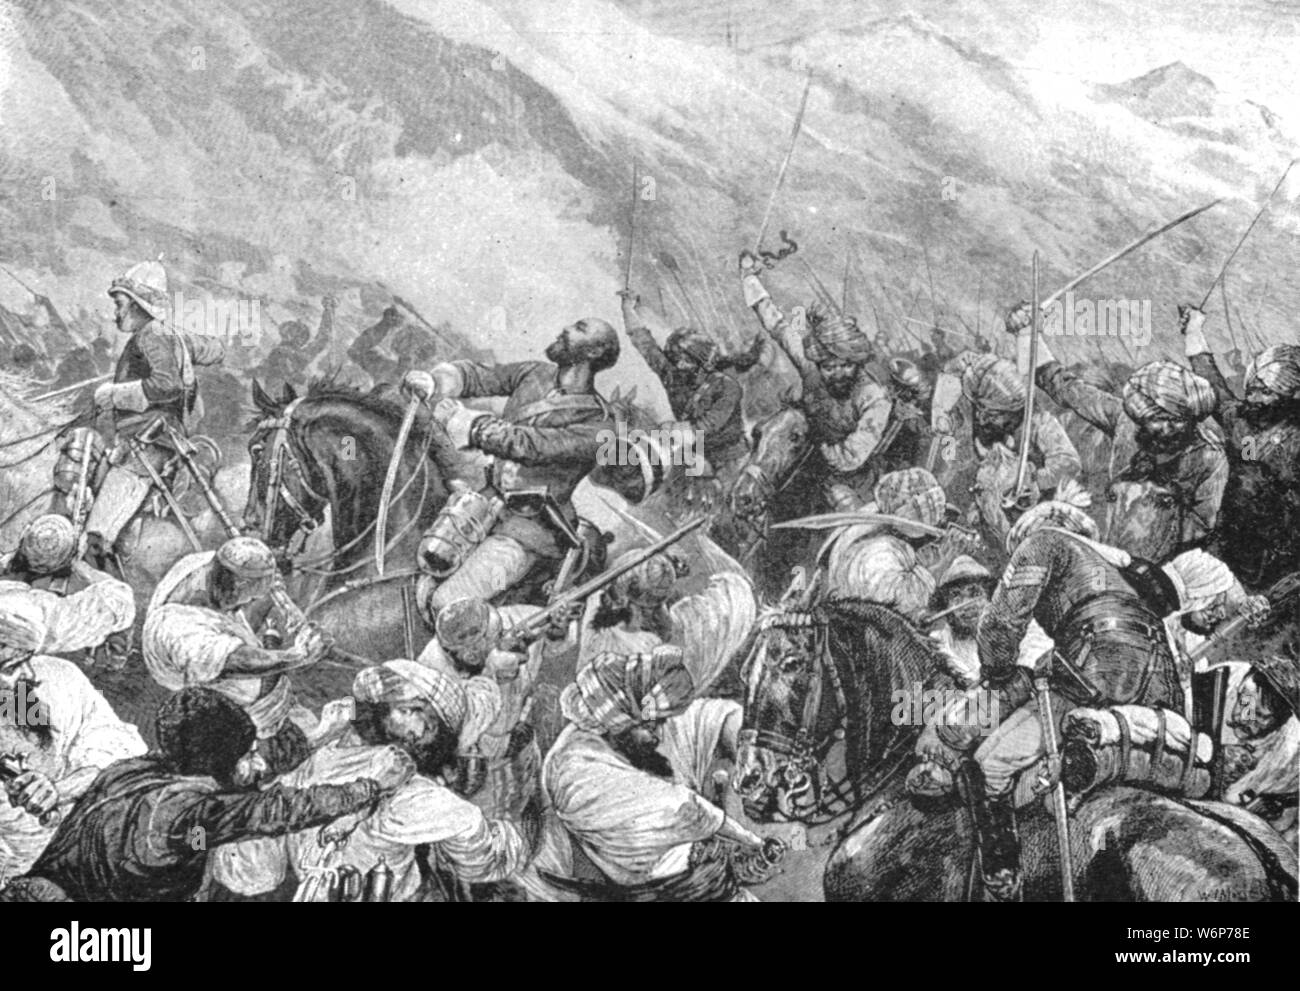 "La guerra in Afghanistan, 1879: la morte di grandi Wigram Battye nella battaglia di Futtehabad, Aprile 2', (1901). Soldato britannico grandi Wigram Battye (1842-1879) del Punjab Frontier Force è stato girato nel petto e coscia mentre si ricarica Kugiani tribesmen presso il villaggio di Khuja vicino Futtehabad (o Fatehabad) in Afghanistan. Il suo ordinato in seguito riportato; "ho chiamato per Wigram, "si sono feriti; si era meglio fermare." Wigram detta "Tenere tranquilla", addebitati e ucciso quattro uomini prima che egli è stato ucciso". "Dall'Illustrated London News Record del glorioso Regno della Regina Victoria 1837-1901: Foto Stock